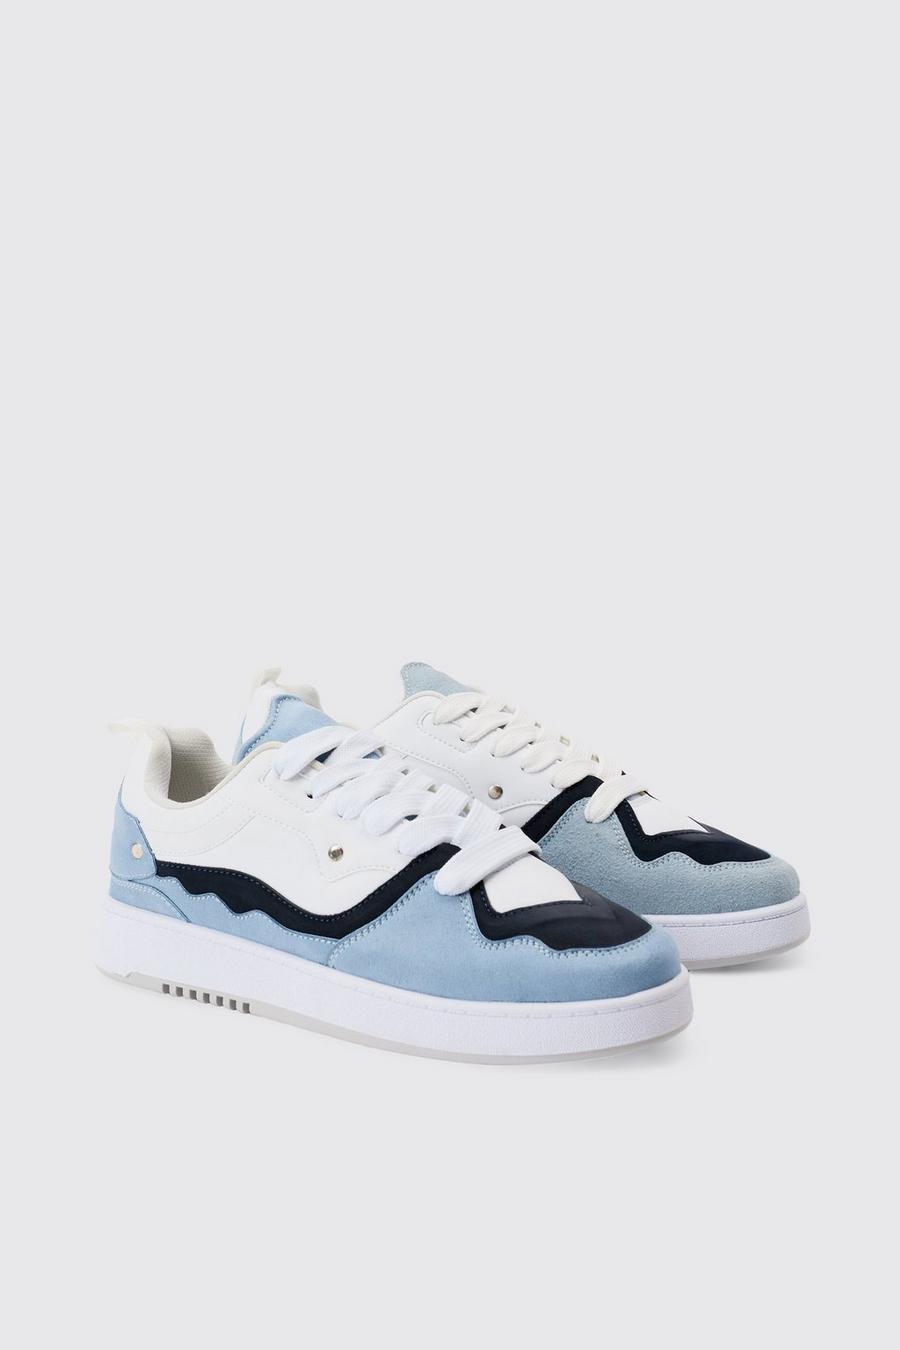 Blue Stevige Monochrome Sneakers In Blauw